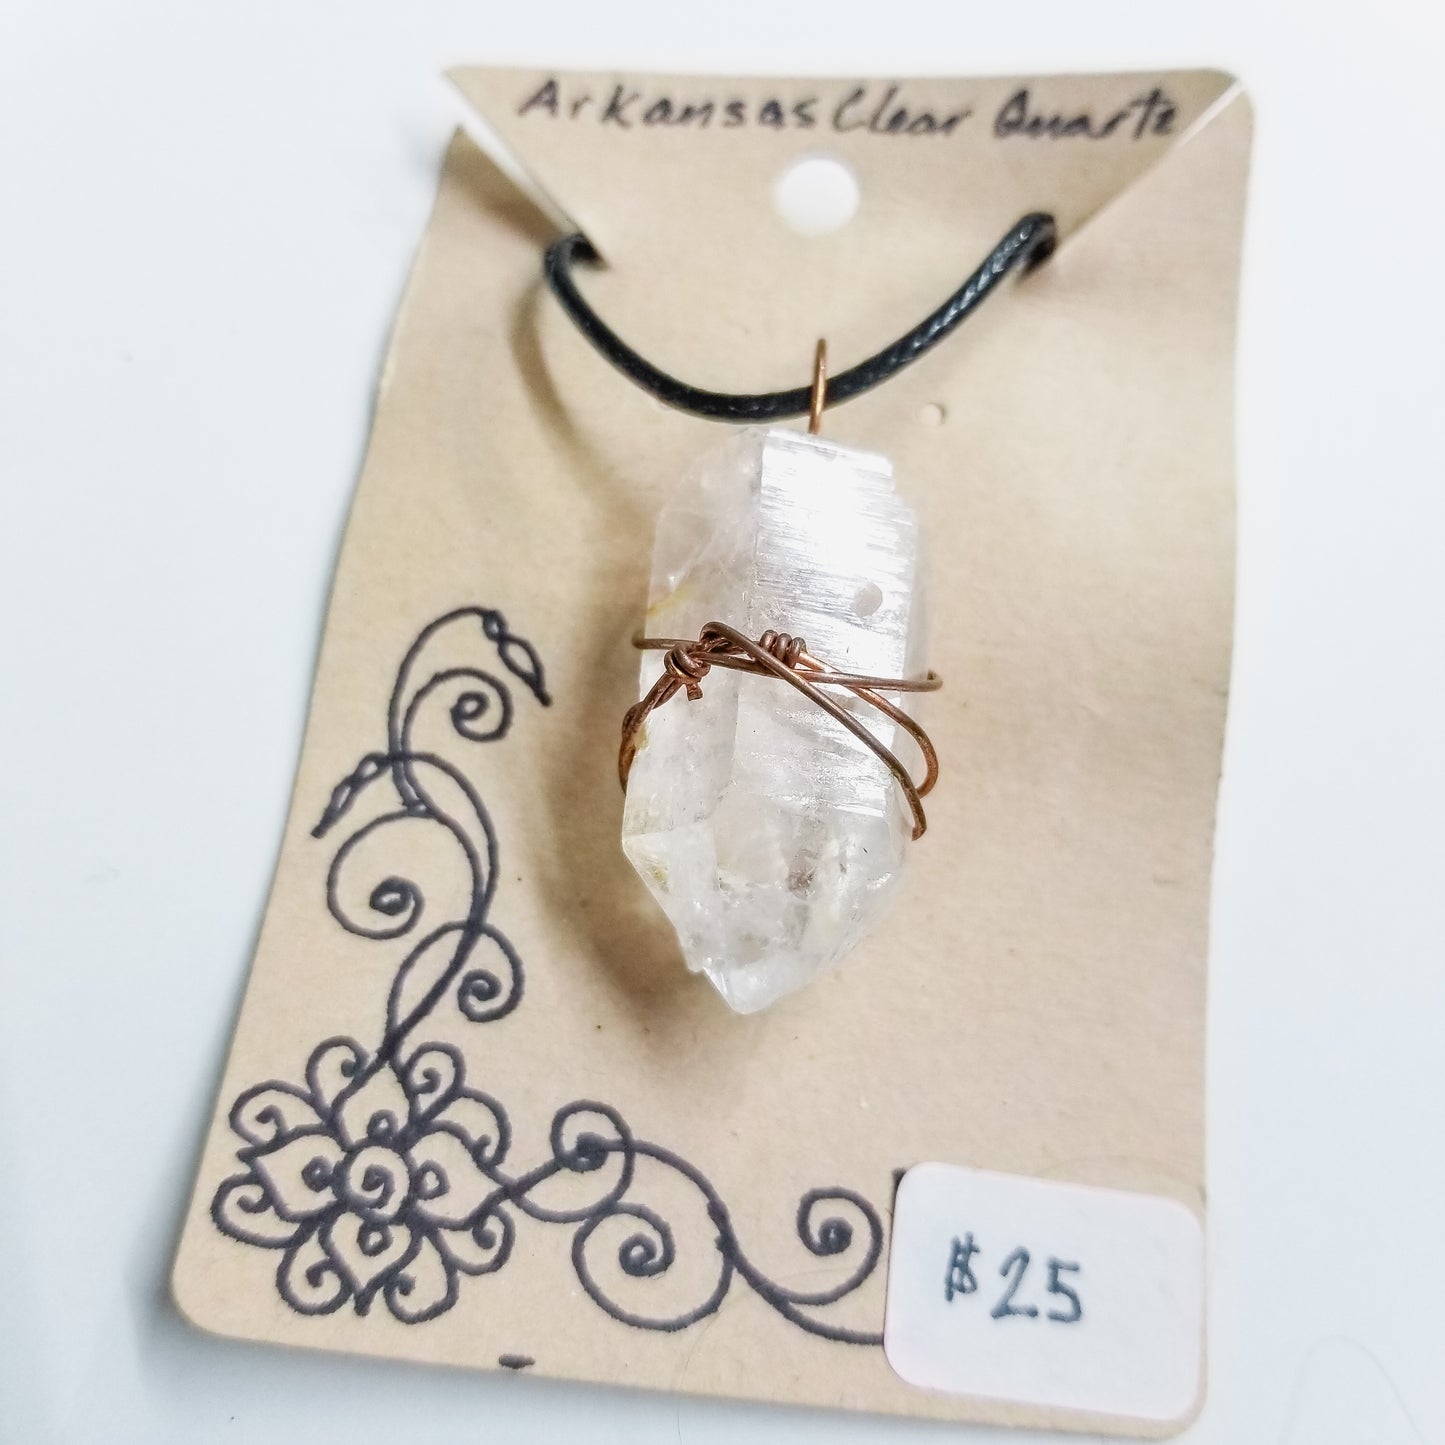 Arkansas Clear Quartz Handwrapped Necklace